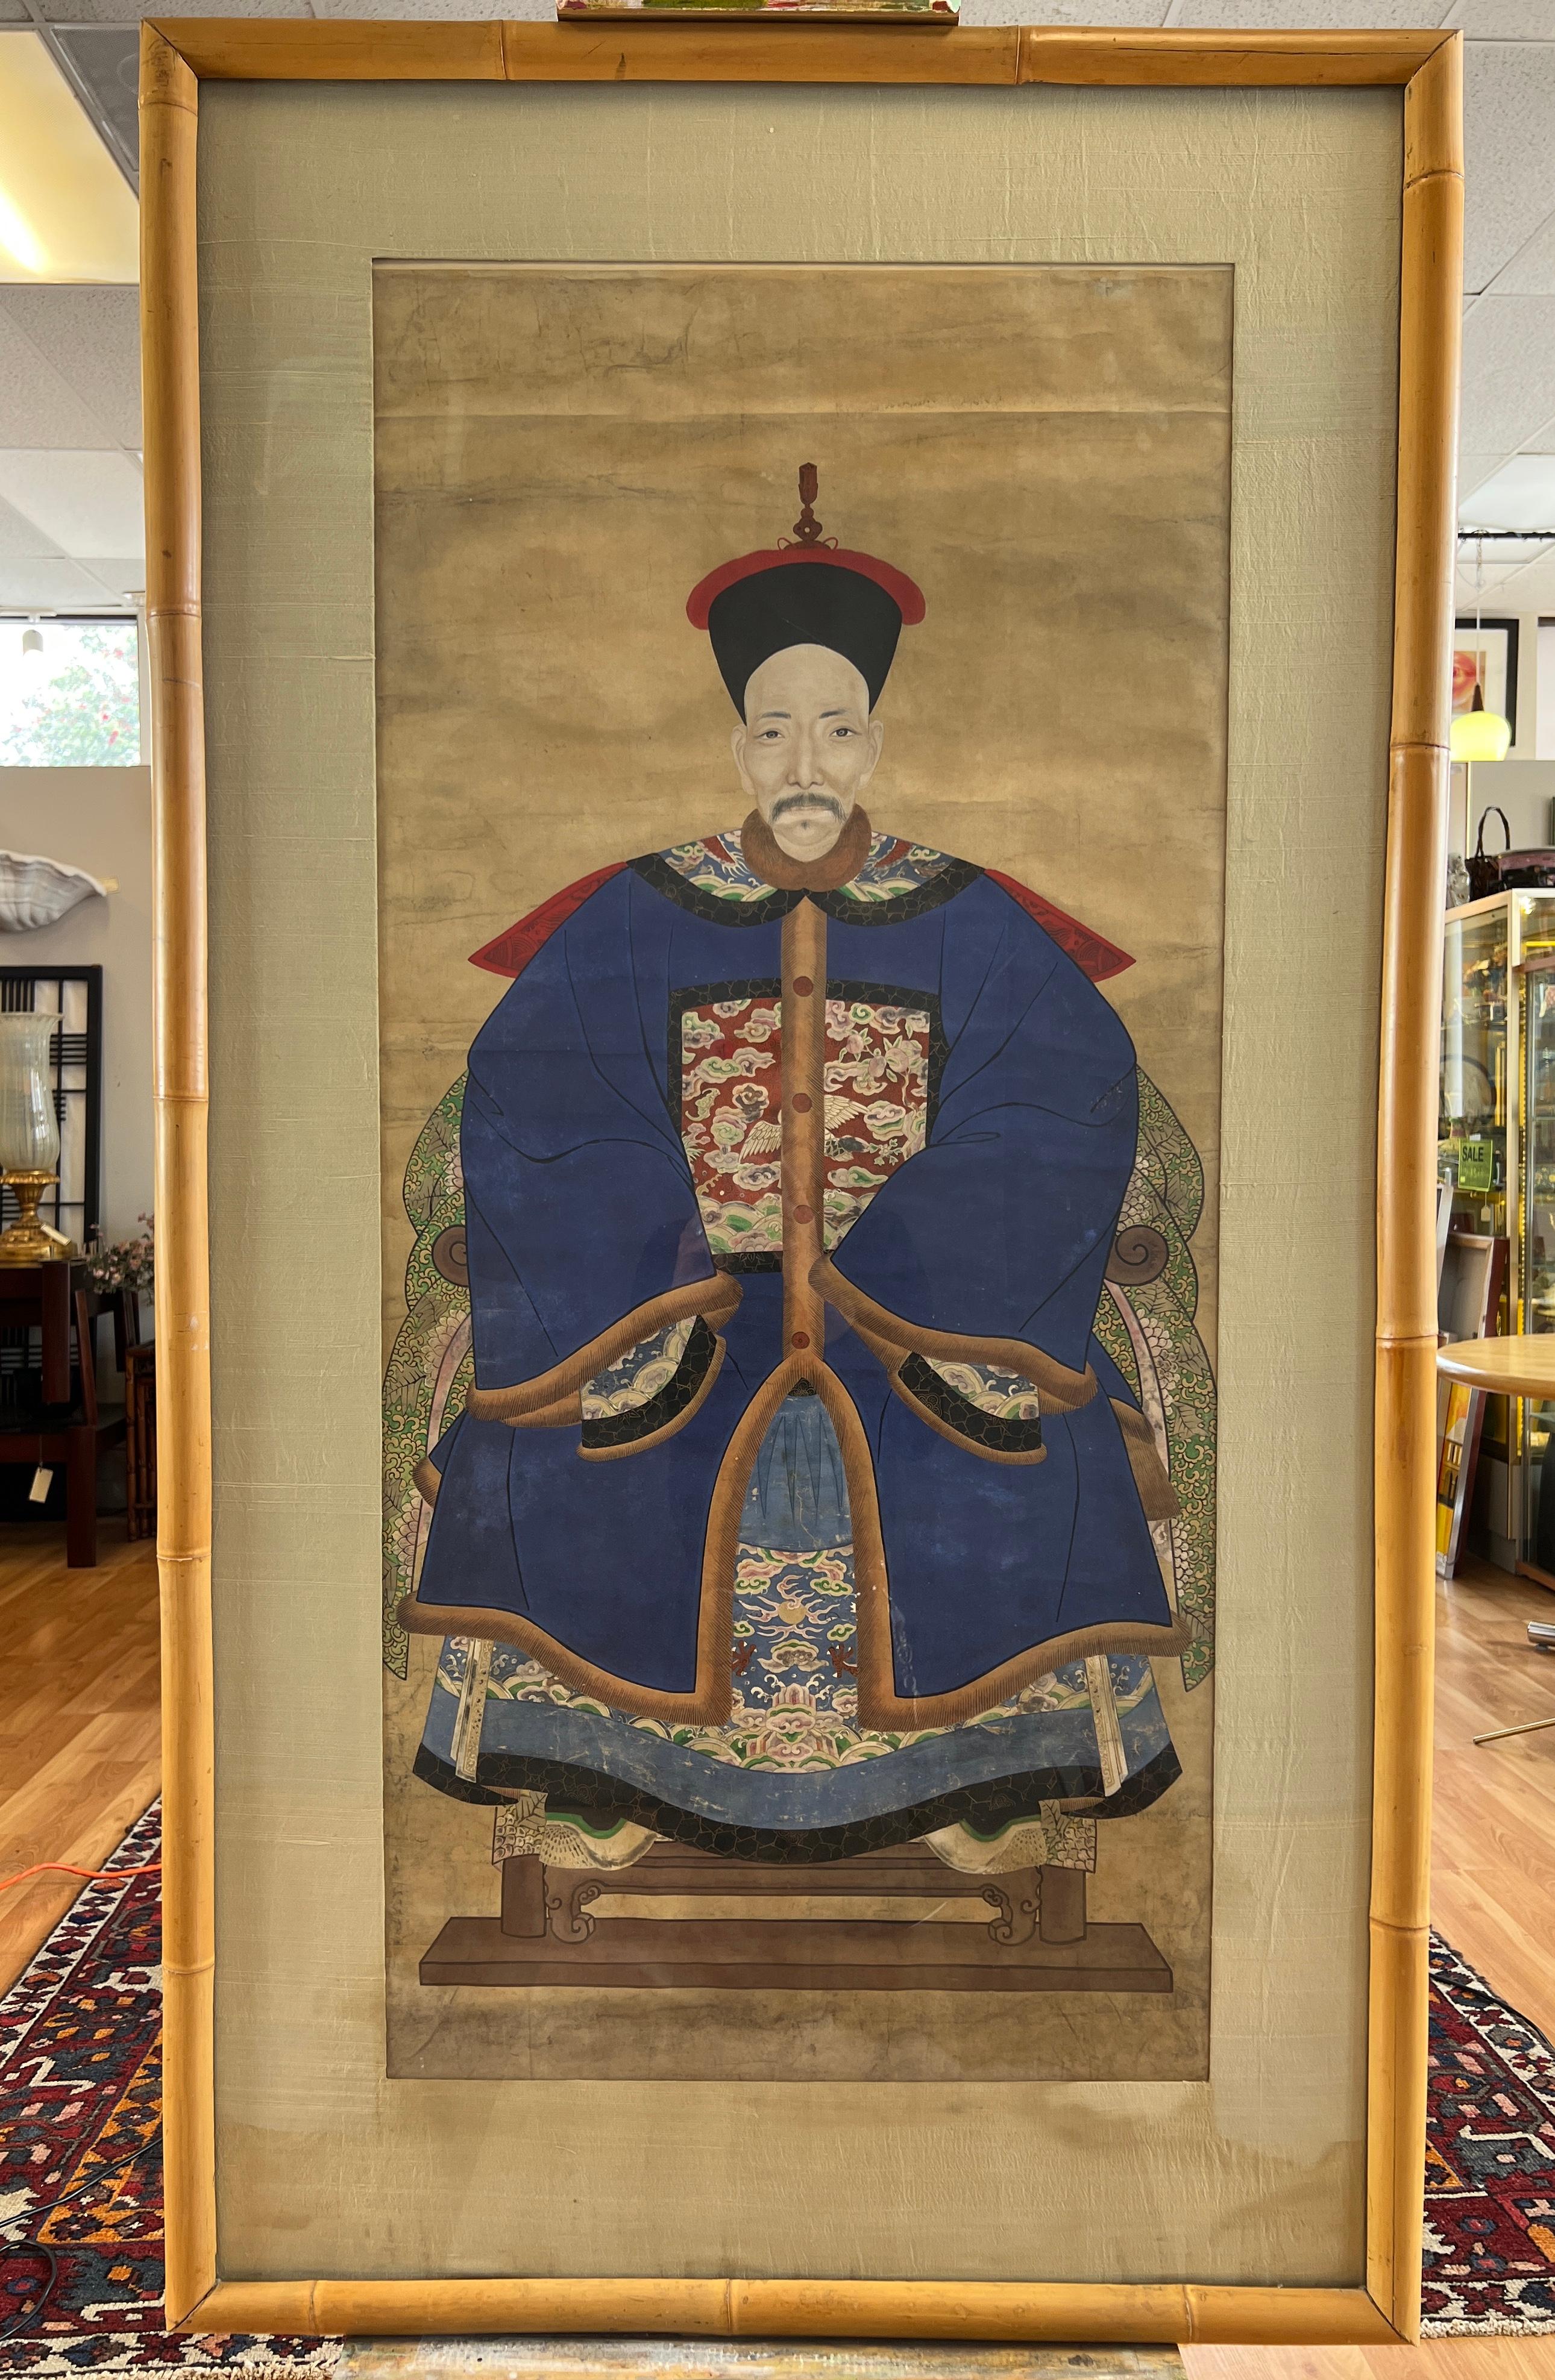 Ein beeindruckend großes Porträtgemälde eines hohen Beamten des ersten Ranges aus der chinesischen Qing-Dynastie des 19. Jahrhunderts in einem Bambusrahmen mit Seidenmatte. 

Es zeichnet sich durch scharfe, feine Linien, satte, leuchtende Farben